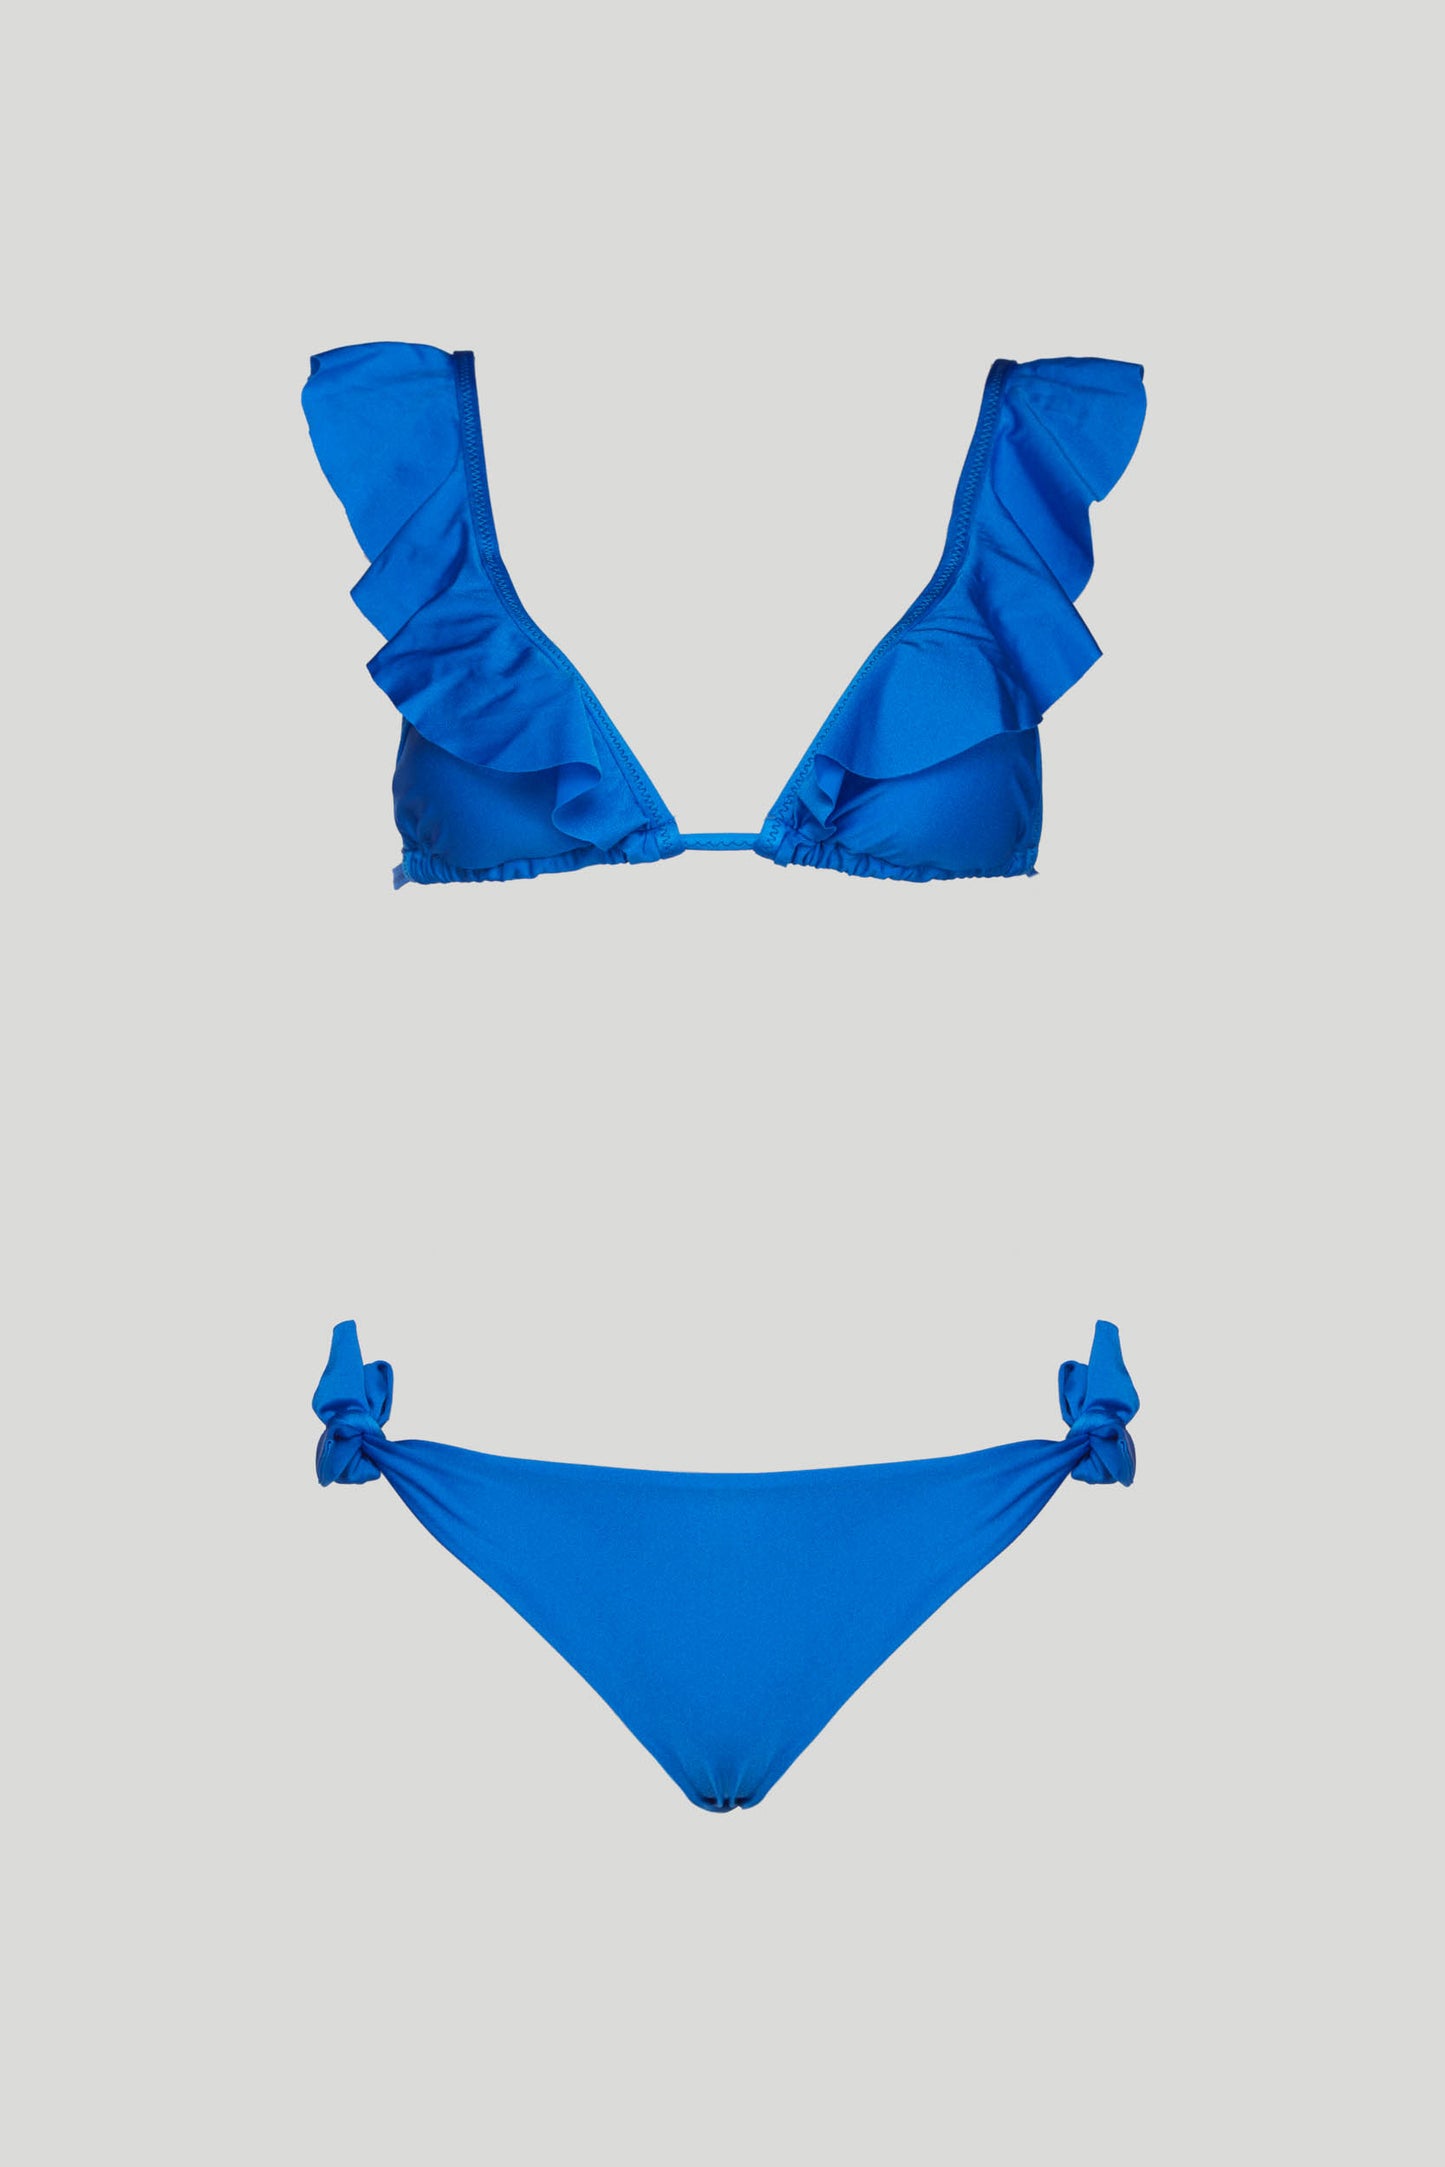 SECRETS LOVE Bluette "Sorrento" bikini top